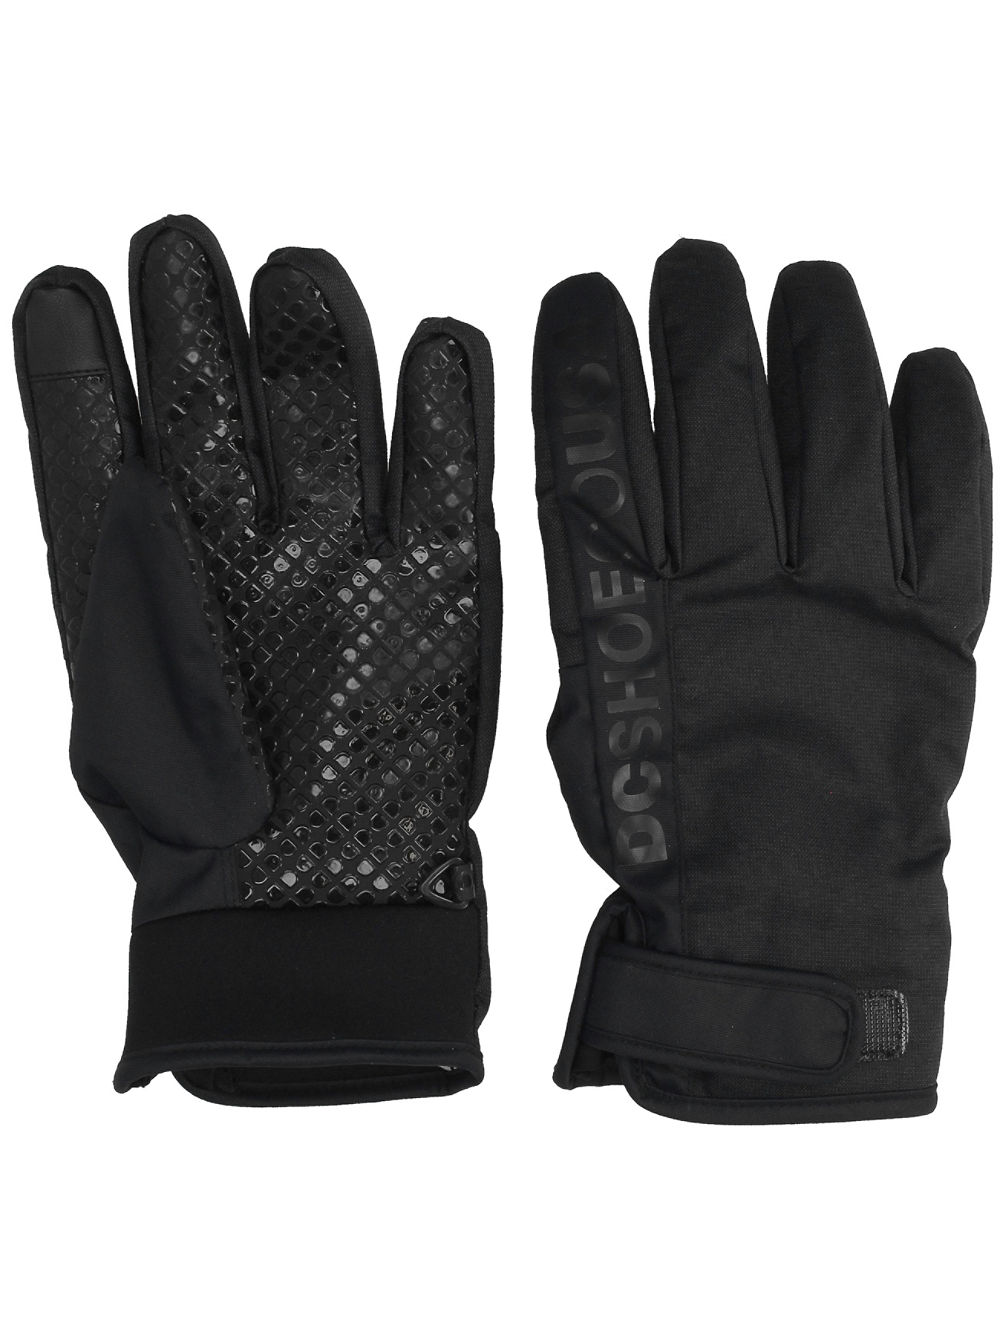 Deadeye Gloves